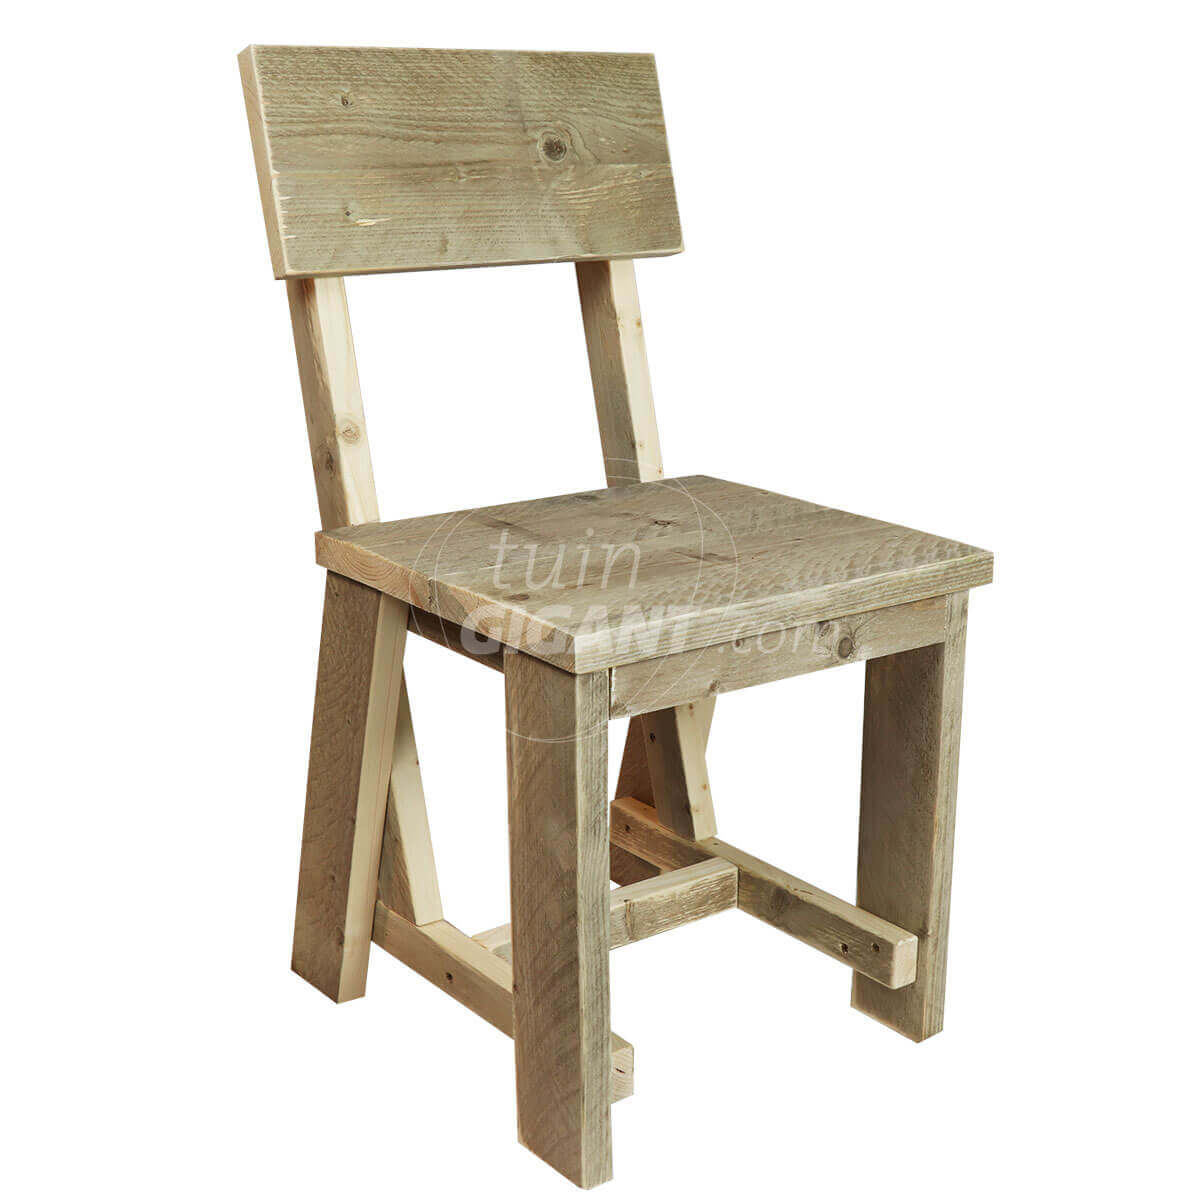 Machtig Rond en rond dubbel Steigerhouten stoel - 85 cm hoog - Tuingigant.com - Online besteld